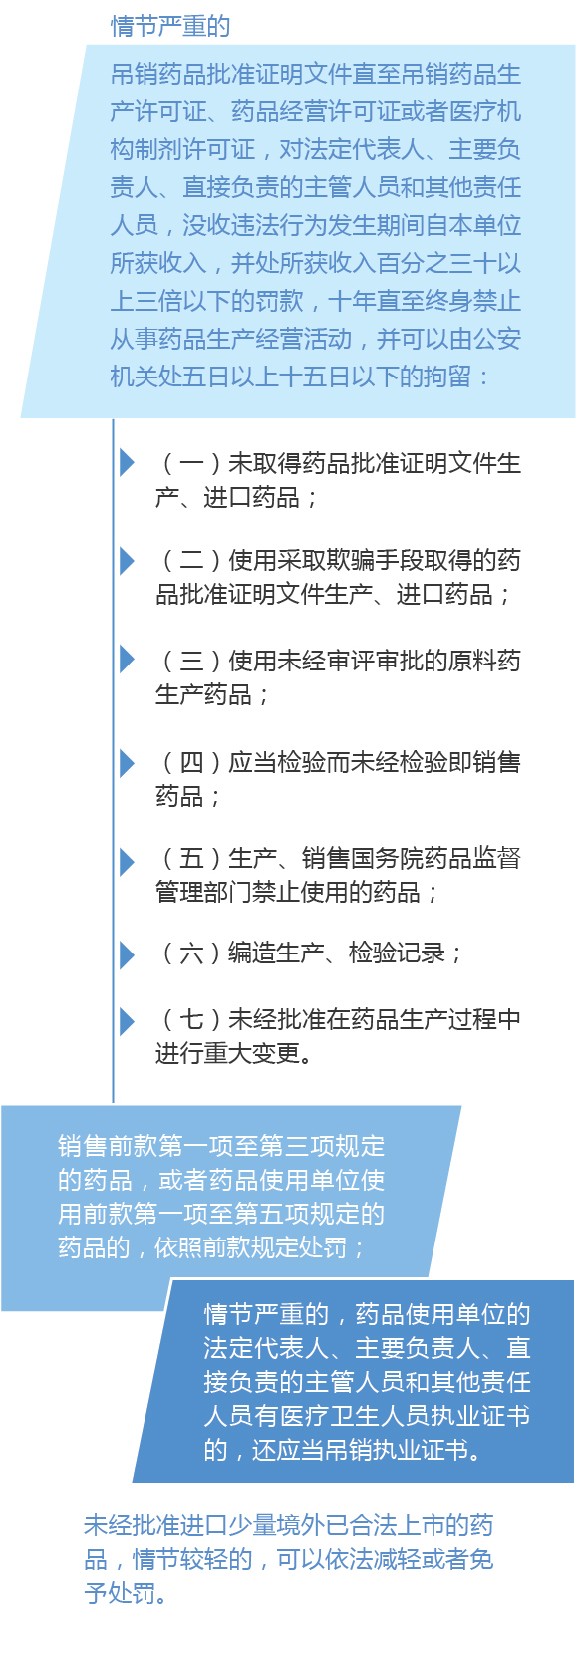 新修订的《中华人民共和国药品管理法》图解政策（七）